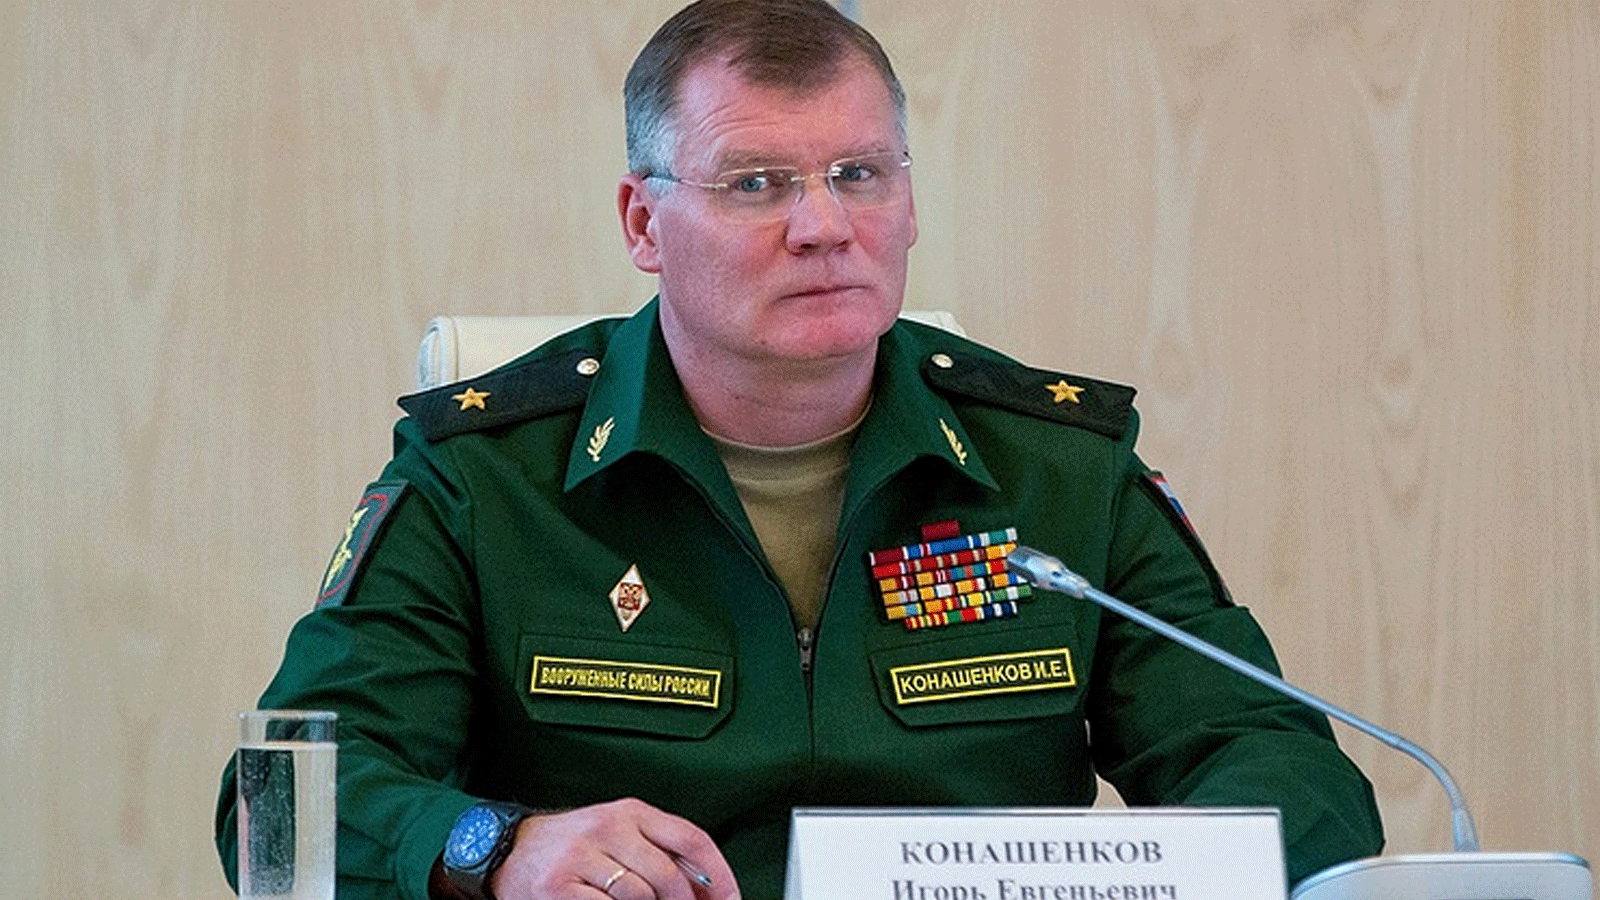 المتحدث باسم وزارة الدفاع الروسية إيغور كوناشنكوف